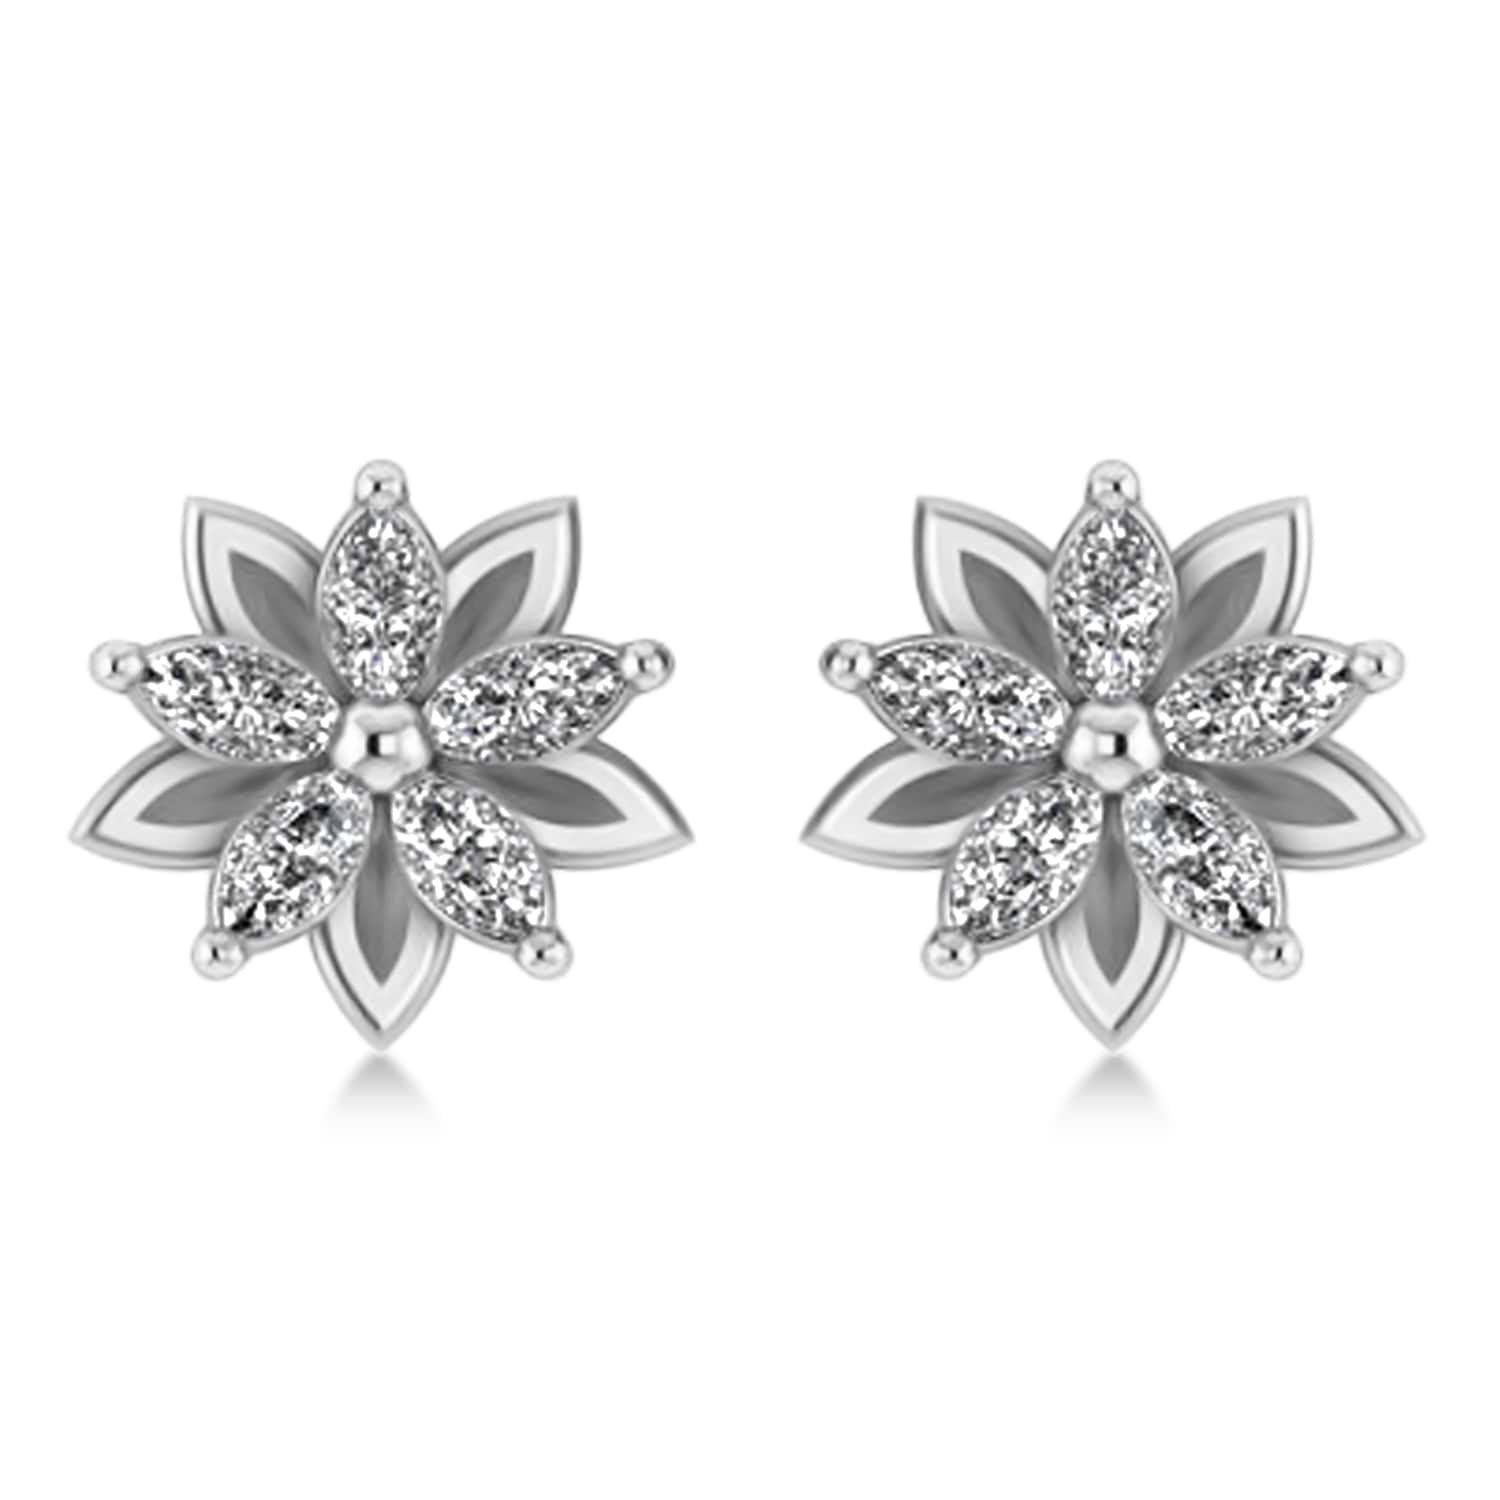 Diamond 5-Petal Flower Earrings 14k White Gold (1.40ct)